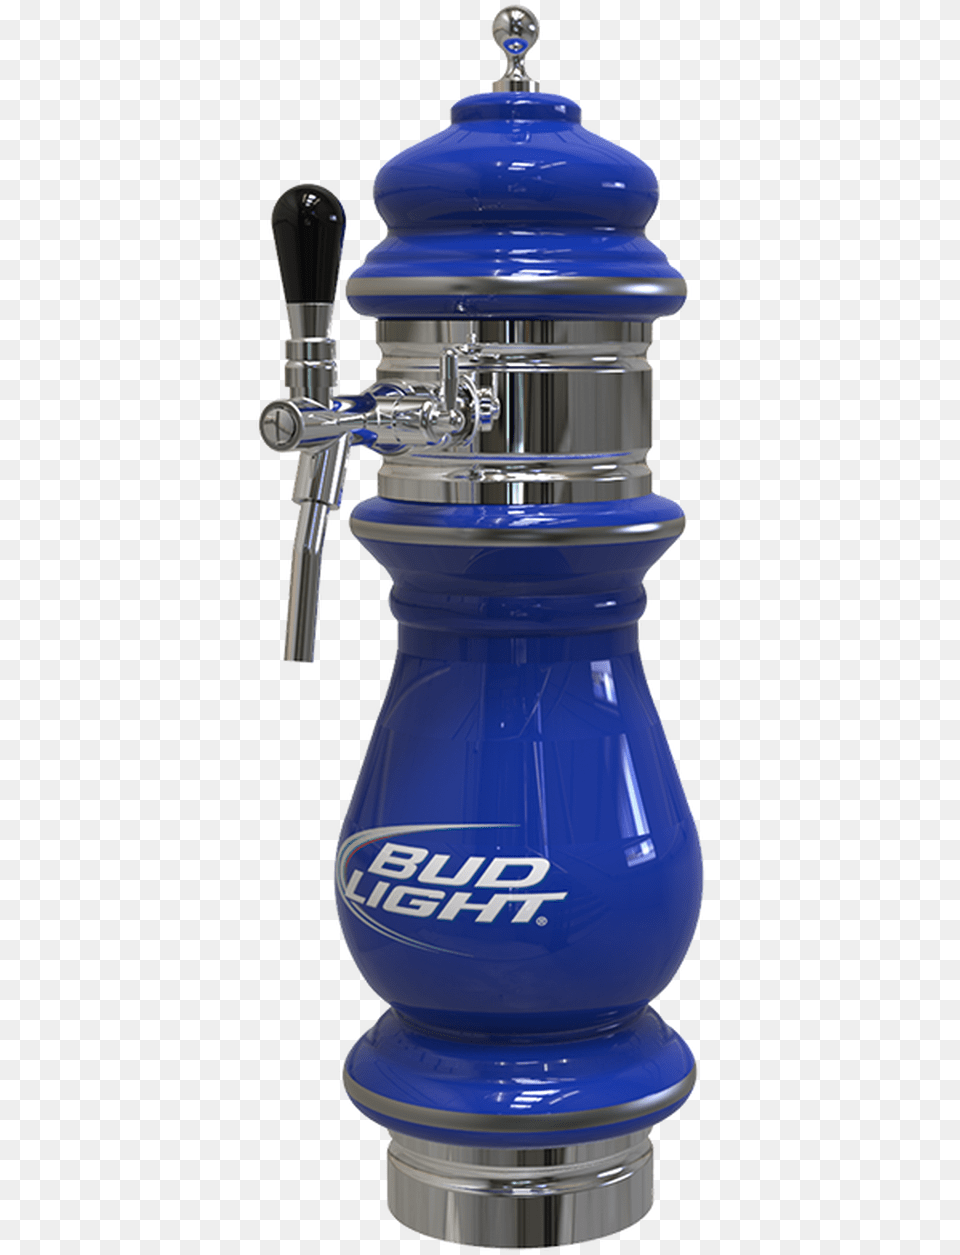 Ceramic Bud Light Beer Tower 1 3 Taps Cobalt Blue, Bottle, Shaker, Machine, Jar Free Transparent Png